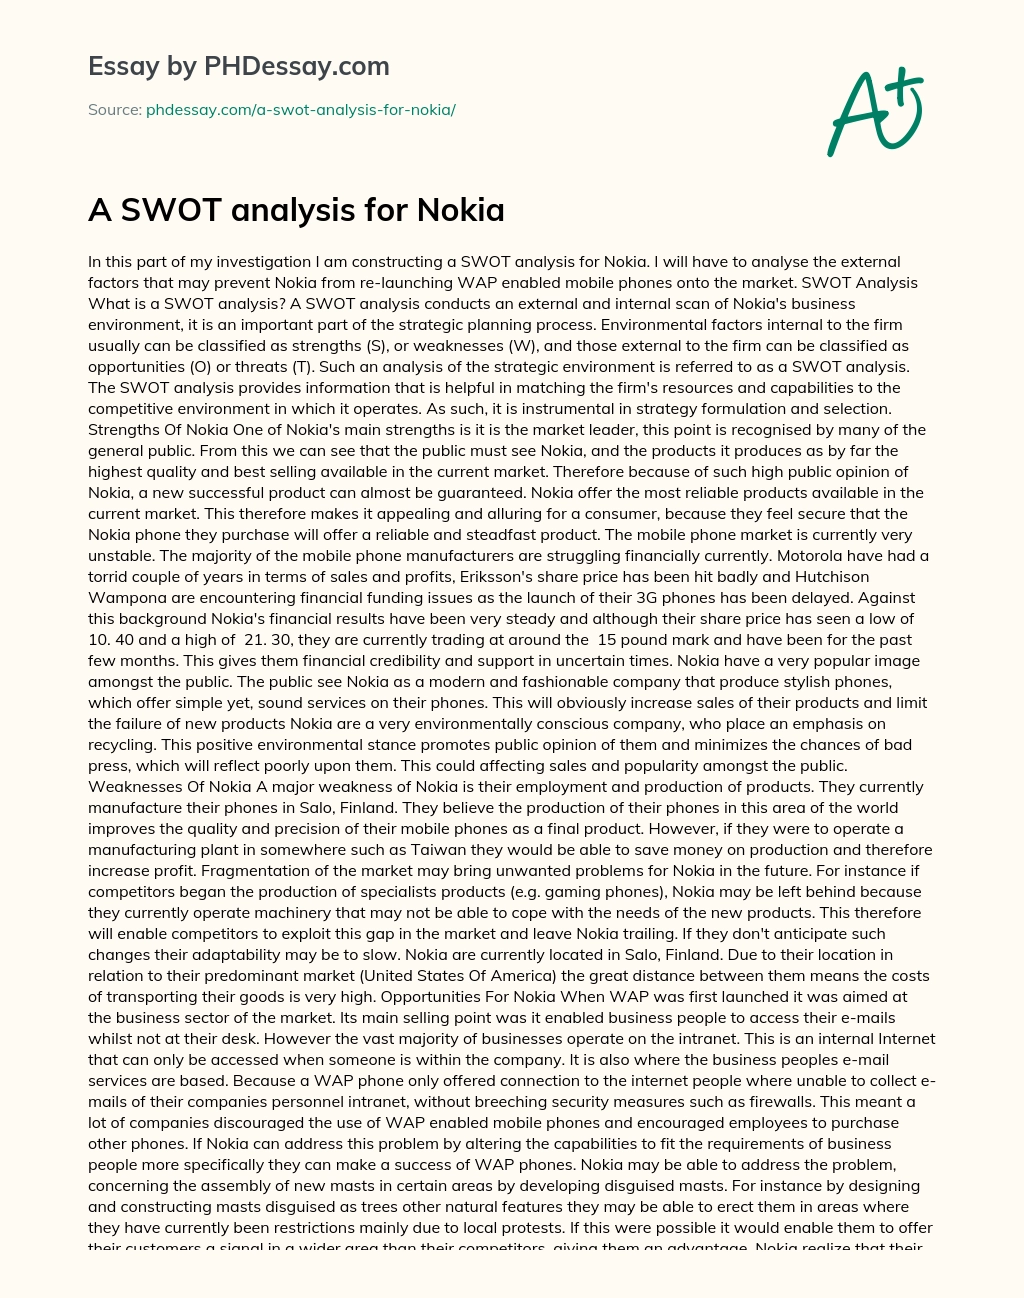 A SWOT analysis for Nokia essay